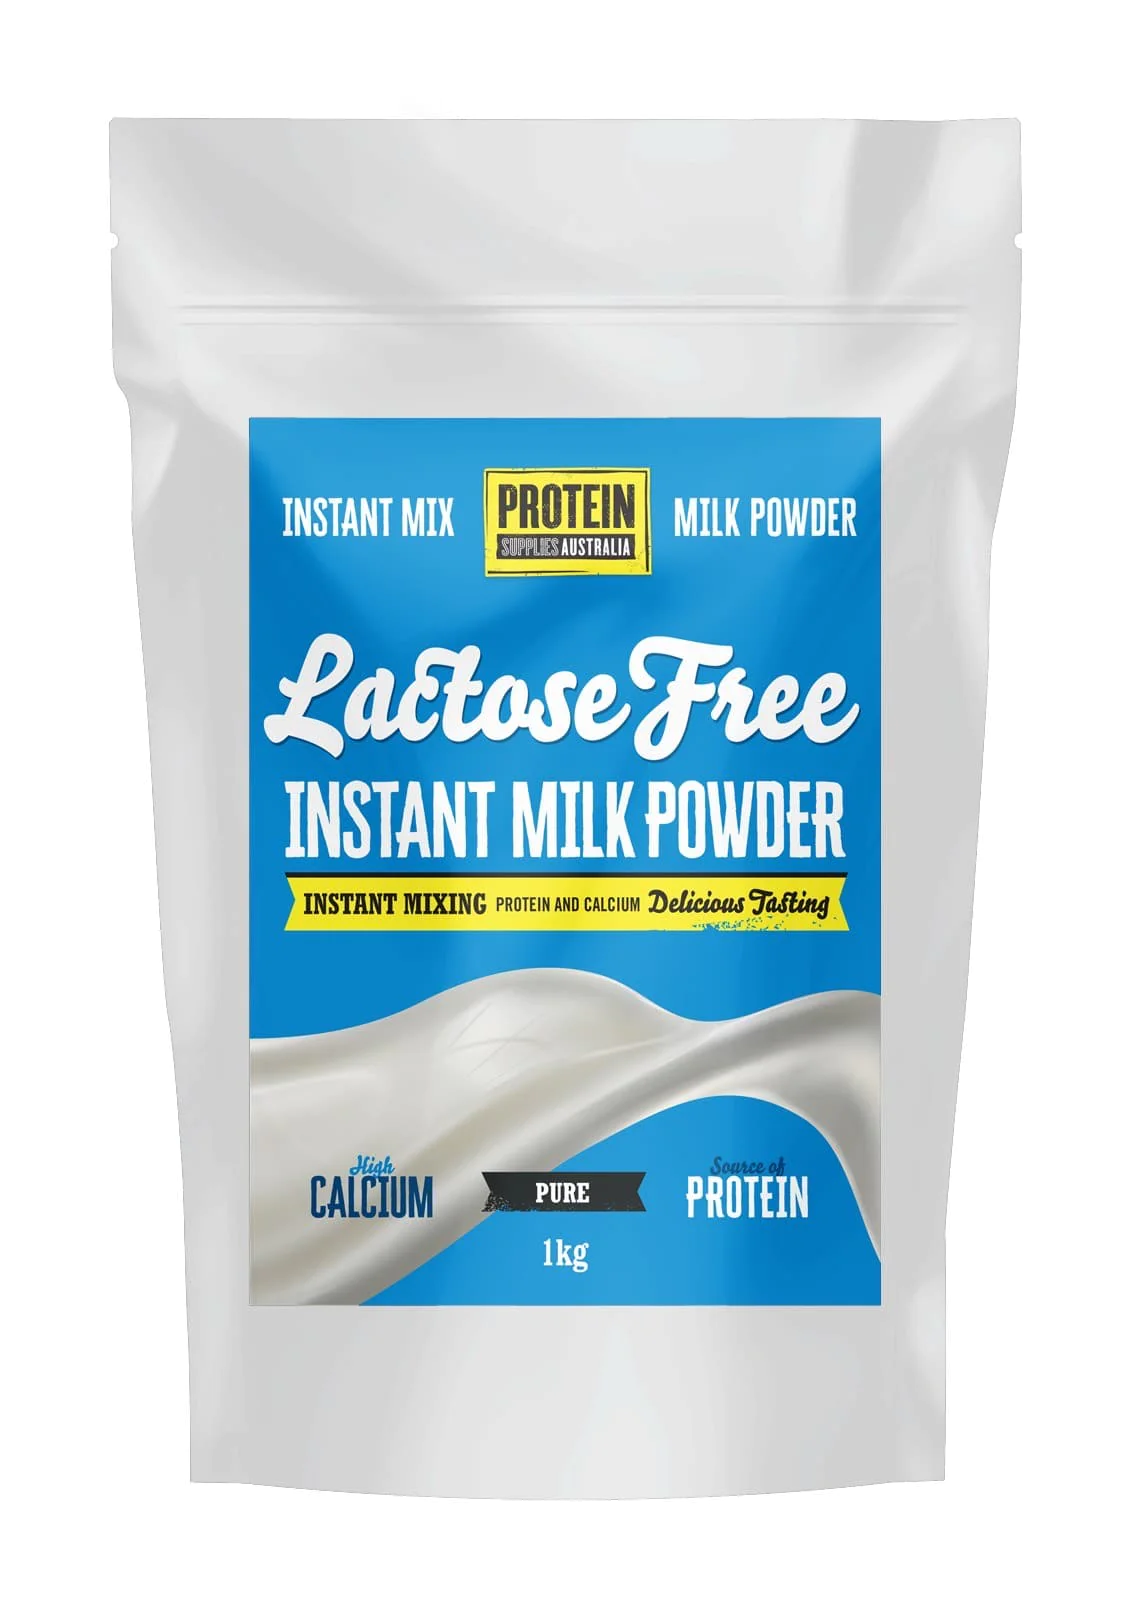 milk protein, raw milk